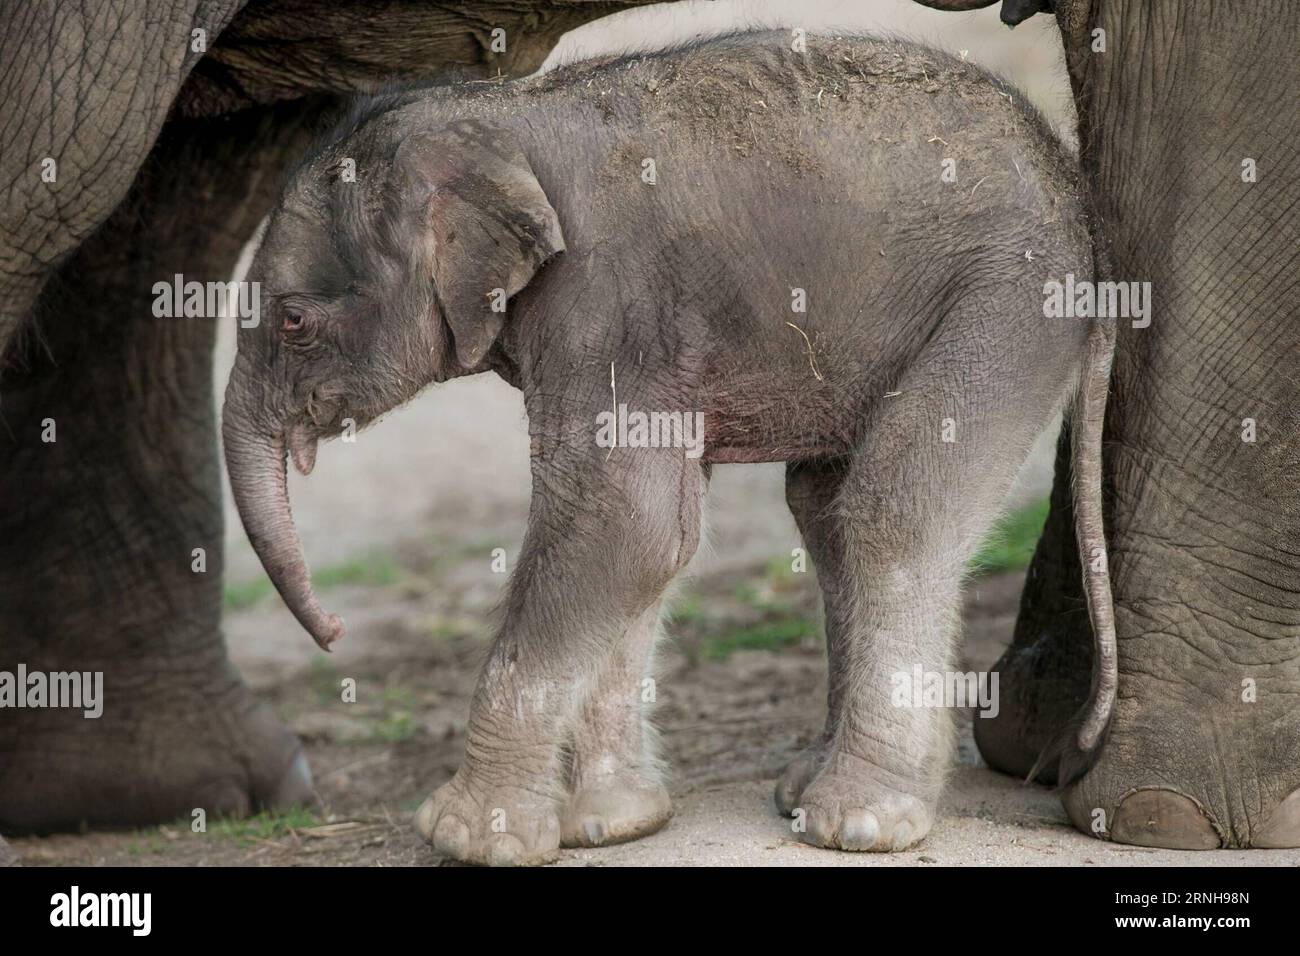 (161103) -- SYDNEY, 3 novembre 2016 -- foto scattata il 3 novembre 2016, mostra un vitello di elefante asiatico nello zoo Taronga Western Plains australiano a Dubbo, nuovo Galles del Sud (NSW), Australia. I guardiani dello zoo australiano Taronga Western Plains a Dubbo del nuovo Galles del Sud (NSW) hanno accolto un sano elefante asiatico di 95 kg. Il vitello è nato alle 15:50 ora locale (AEDT) il mercoledì da madre Thong Dee e padre Gung in un paddock dietro le quinte dove custodi e veterinari erano a portata di mano durante tutto il lavoro. ) (DTF) AUSTRALIA-NUOVO GALLES DEL SUD-ASIATICO ELEFANTE VITELLO-NASCITA CELEBRAZIONE ZHUXHONGYE PUBLICATION Foto Stock